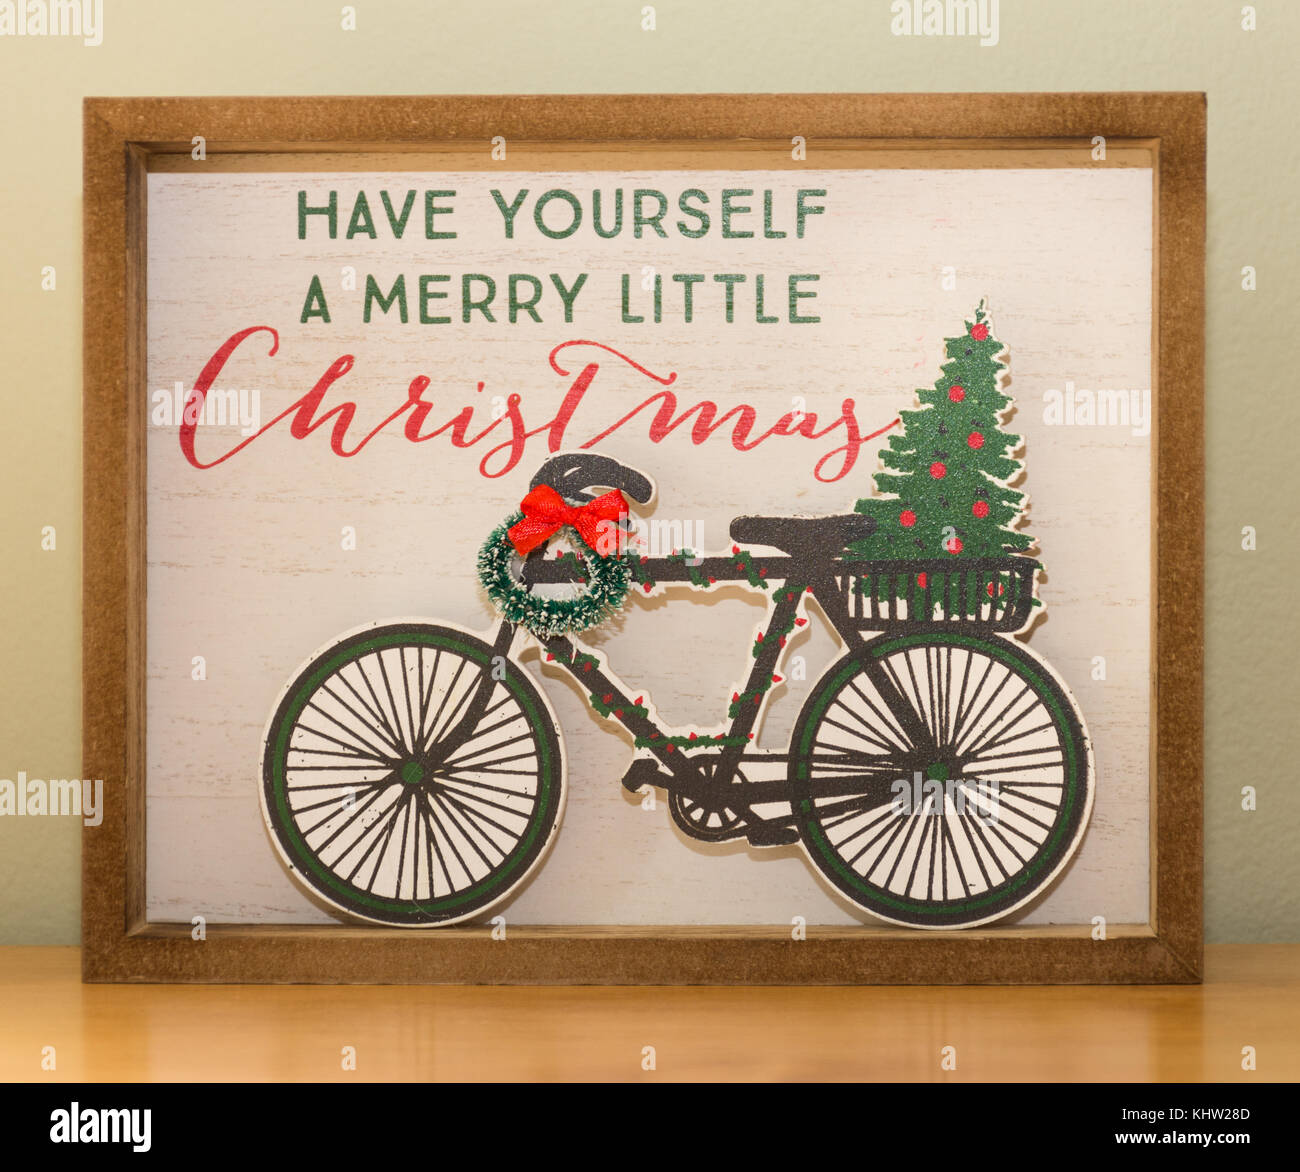 Nahaufnahme der eine Weihnachtsdekoration mit einem Fahrrad, Kranz mit  Schleife, Weihnachtsbaum und "haben Sie sich ein wenig lustig Weihnachten'  Stockfotografie - Alamy